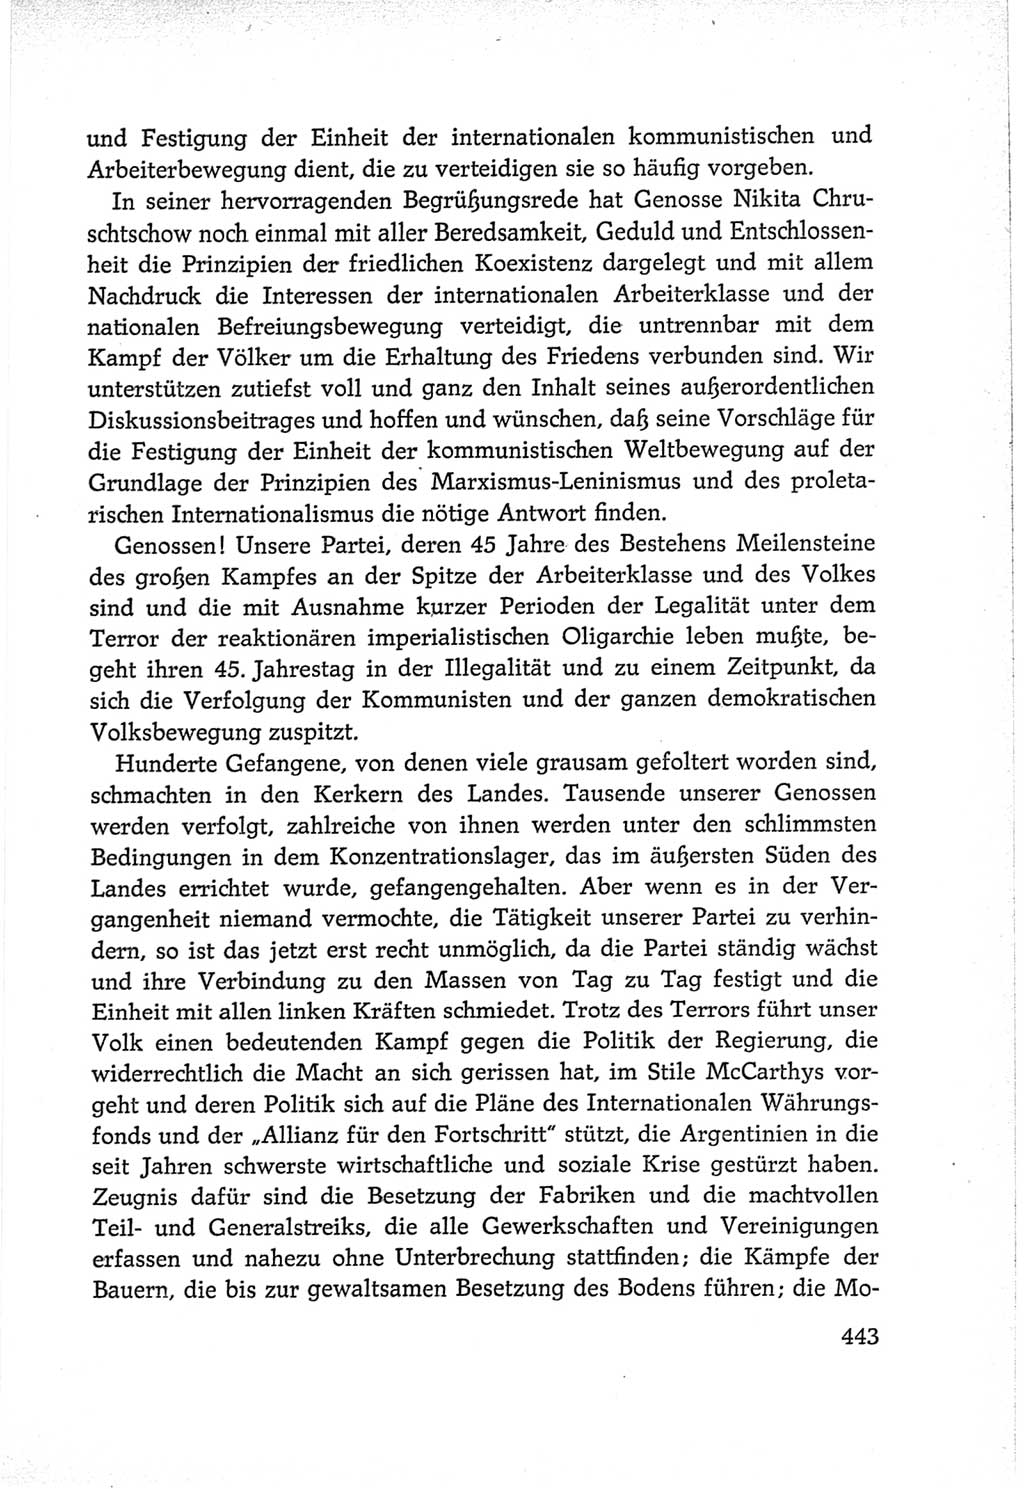 Protokoll der Verhandlungen des Ⅵ. Parteitages der Sozialistischen Einheitspartei Deutschlands (SED) [Deutsche Demokratische Republik (DDR)] 1963, Band Ⅱ, Seite 443 (Prot. Verh. Ⅵ. PT SED DDR 1963, Bd. Ⅱ, S. 443)